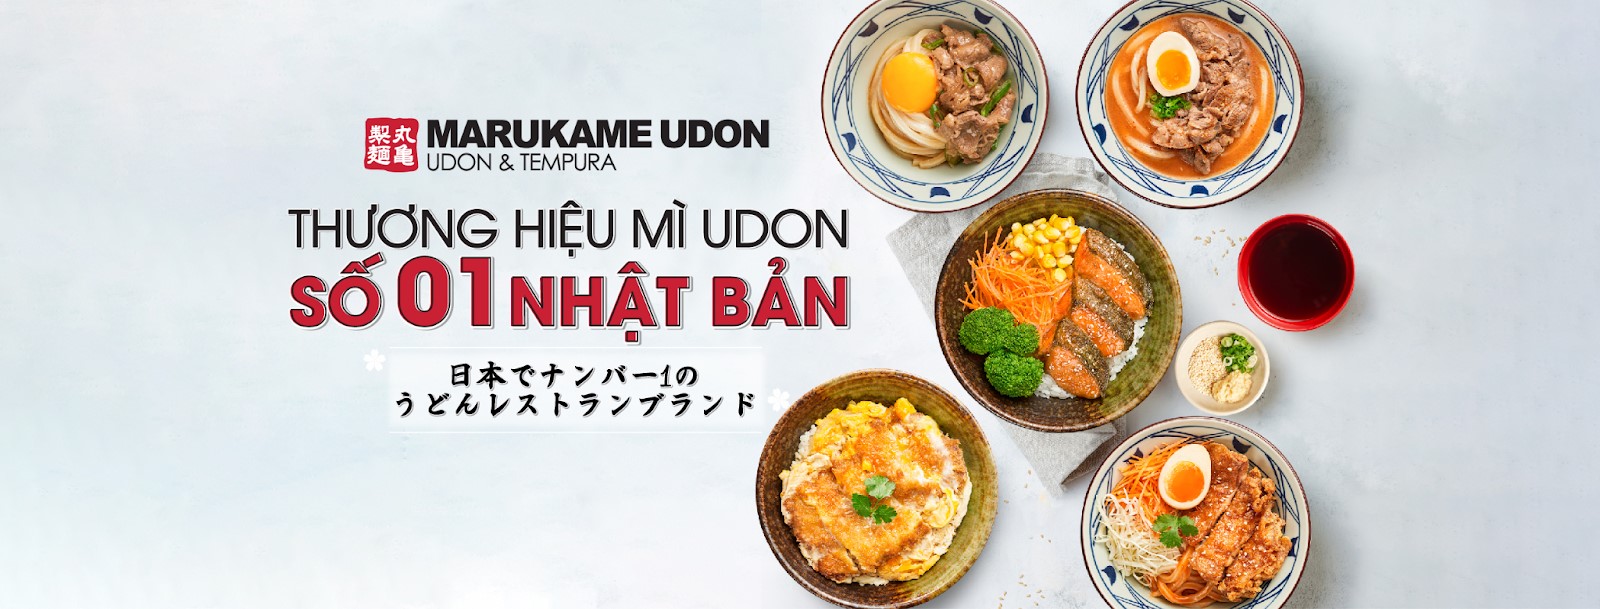 thương hiệu mì udon nổi tiếng Marukame Udon